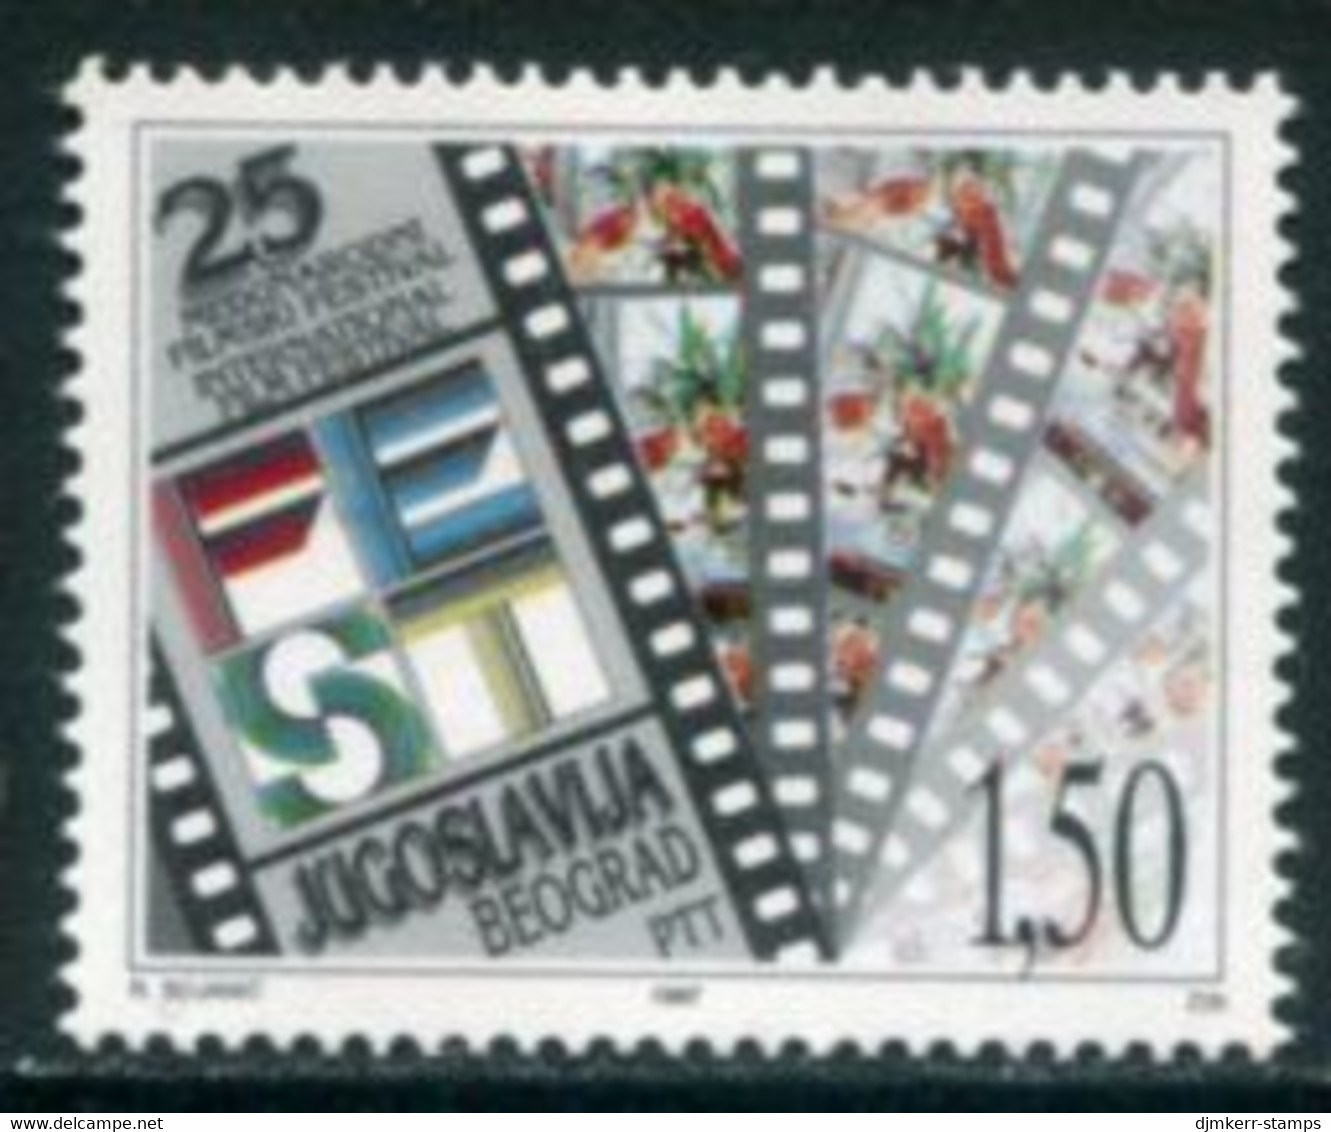 YUGOSLAVIA 1997 Film Festival MNH / **.  Michel 2808 - Nuovi